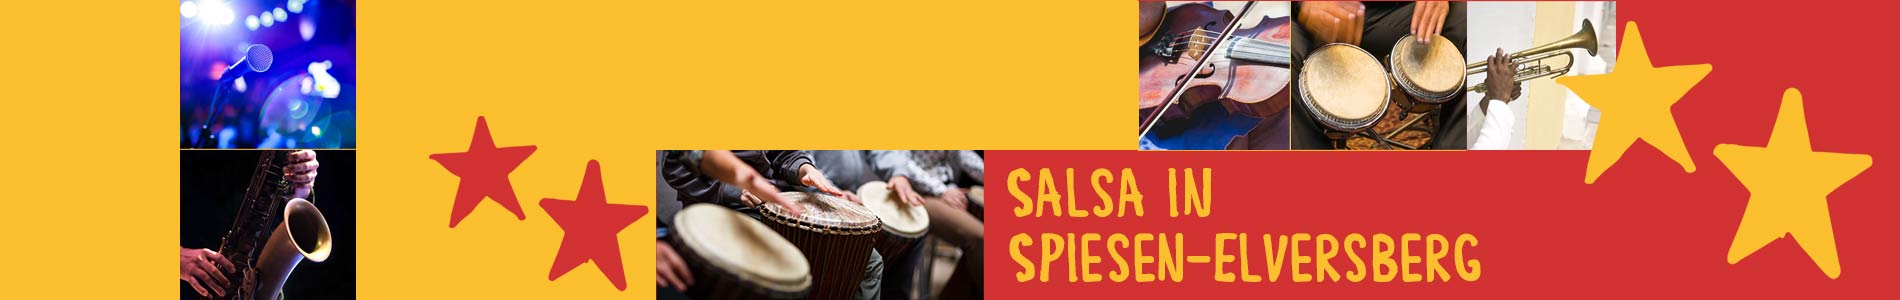 Salsa in Spiesen-Elversberg – Salsa lernen und tanzen, Tanzkurse, Partys, Veranstaltungen